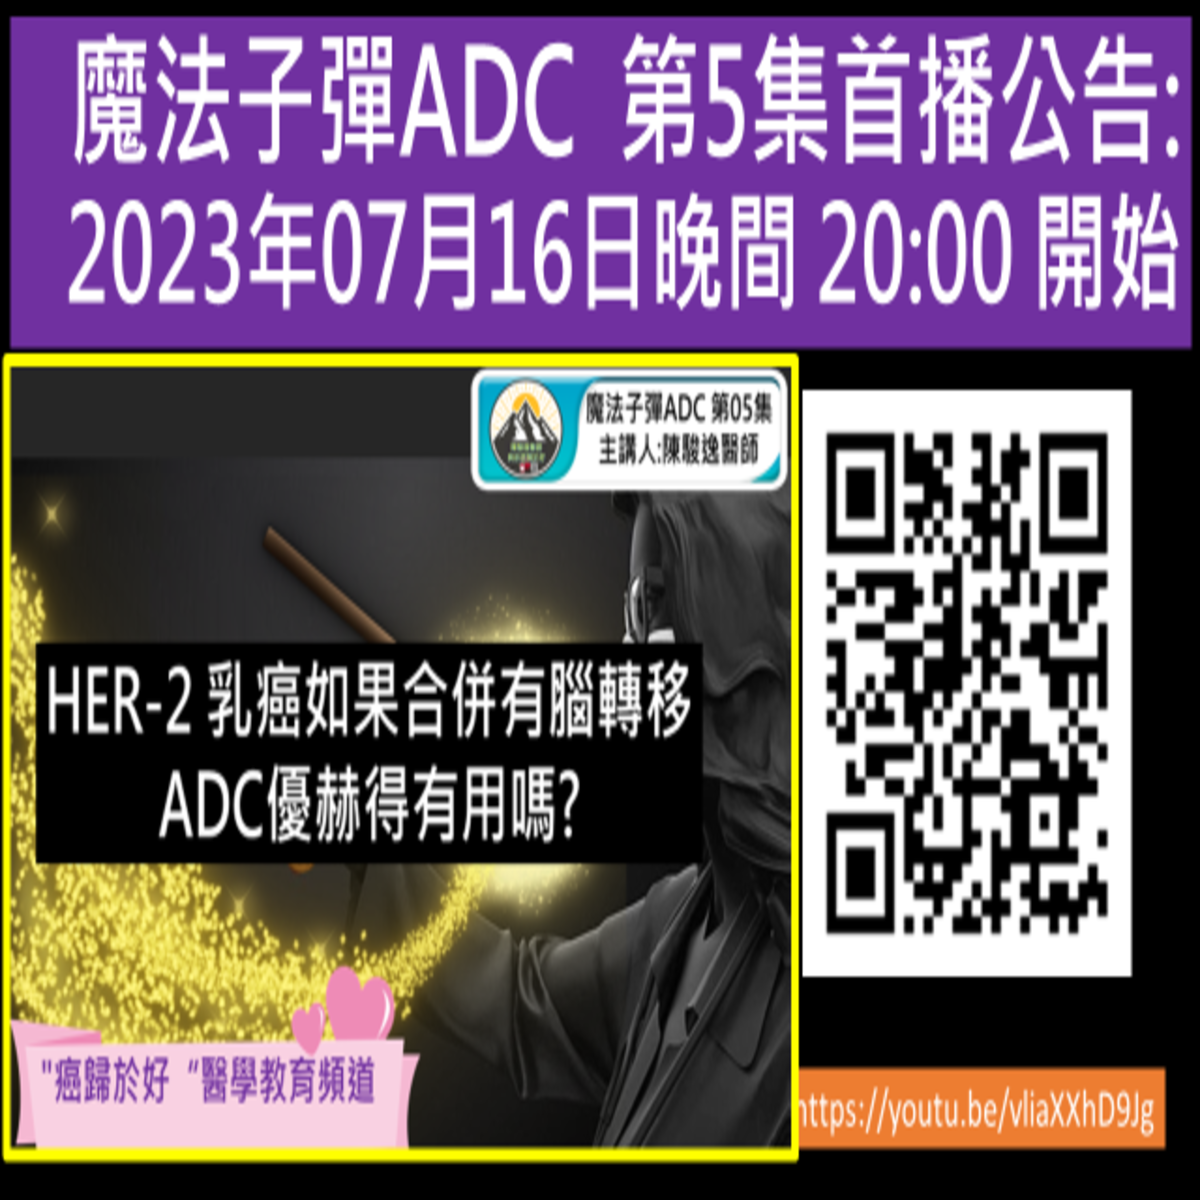 魔法子彈ADC 第05集 首播公告:HER-2 乳癌如果合併有腦轉移 ADC優赫得有用嗎?